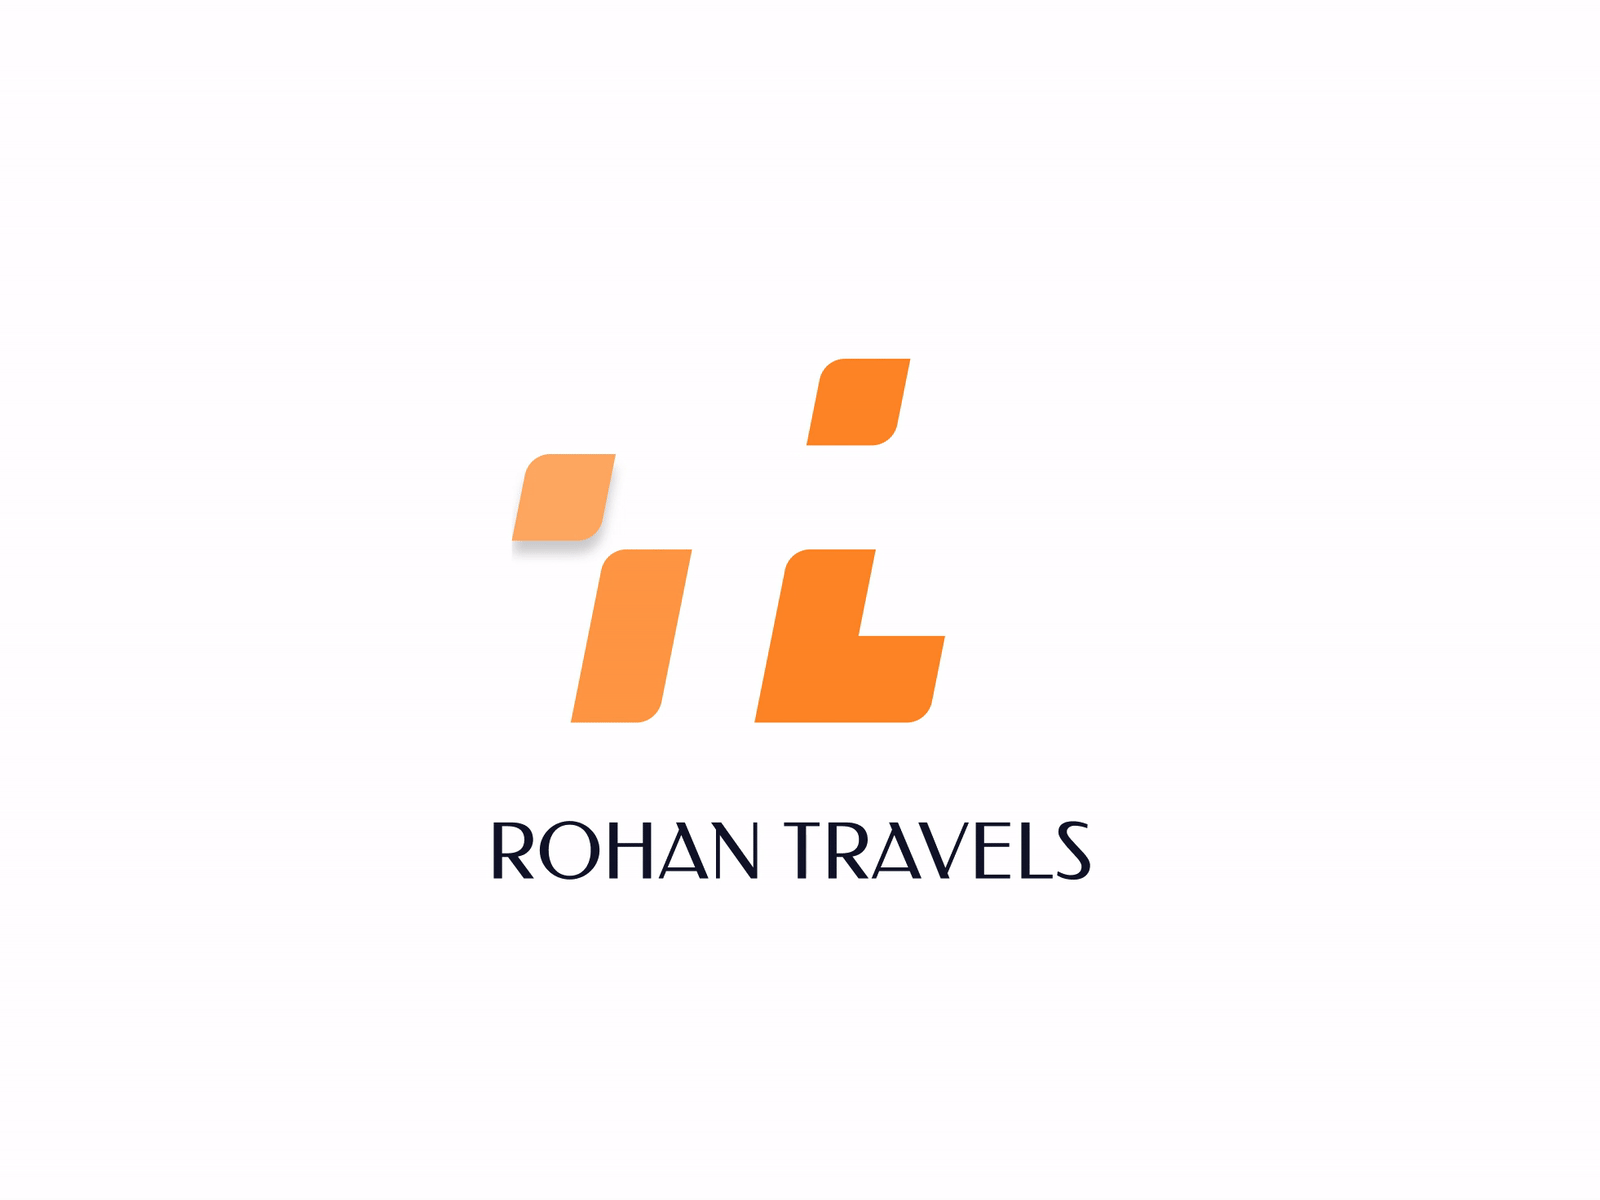 Website Loader for Travel Website designed in india graphicdesign indian design loaders loading animation logo tourism travel website